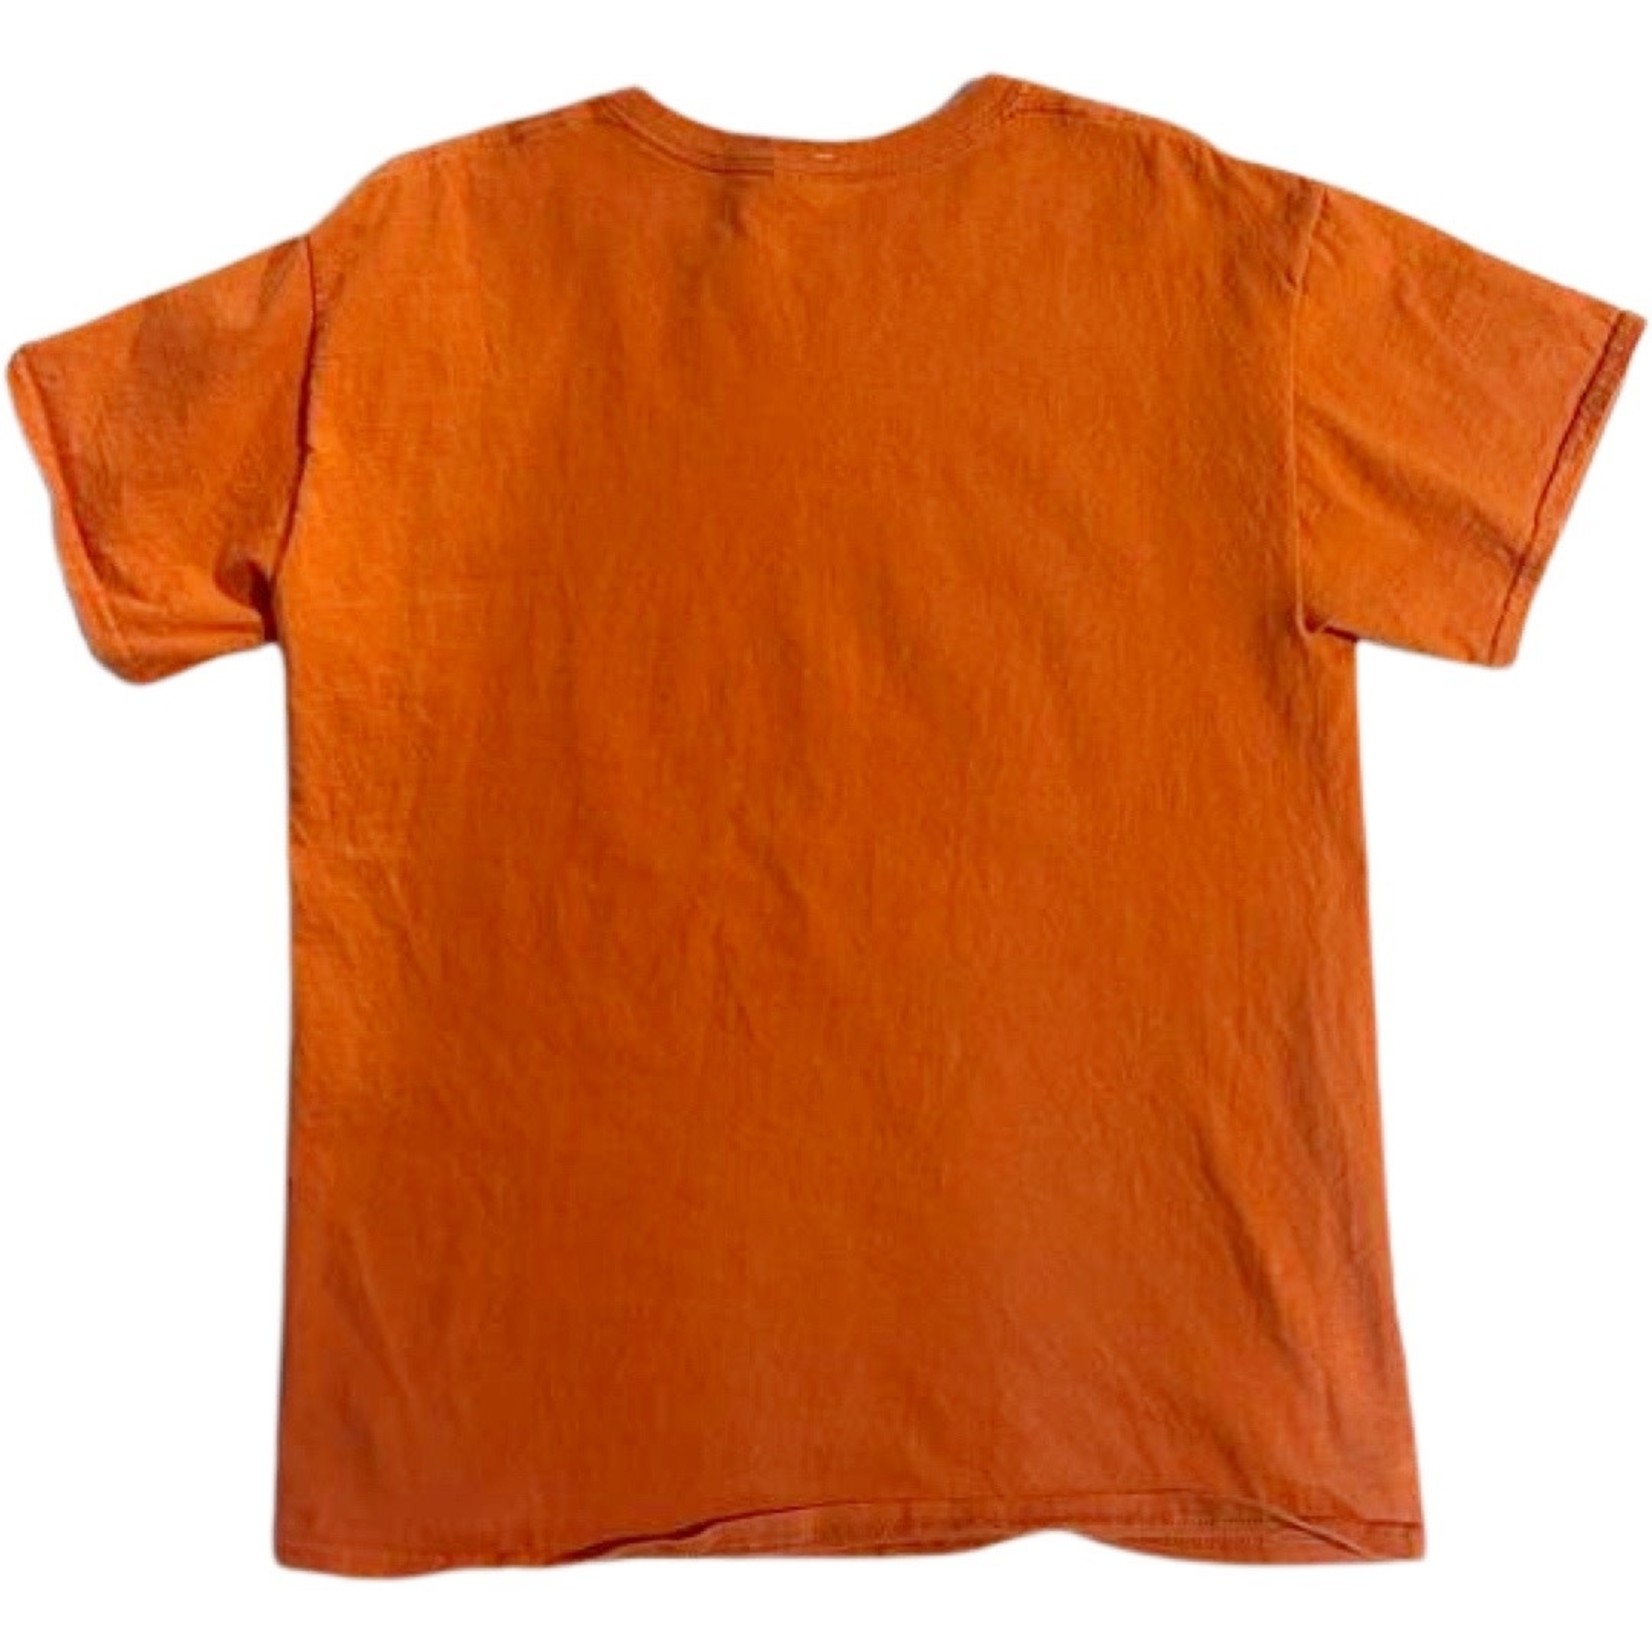 Vintage Vintage T-shirt orange size M